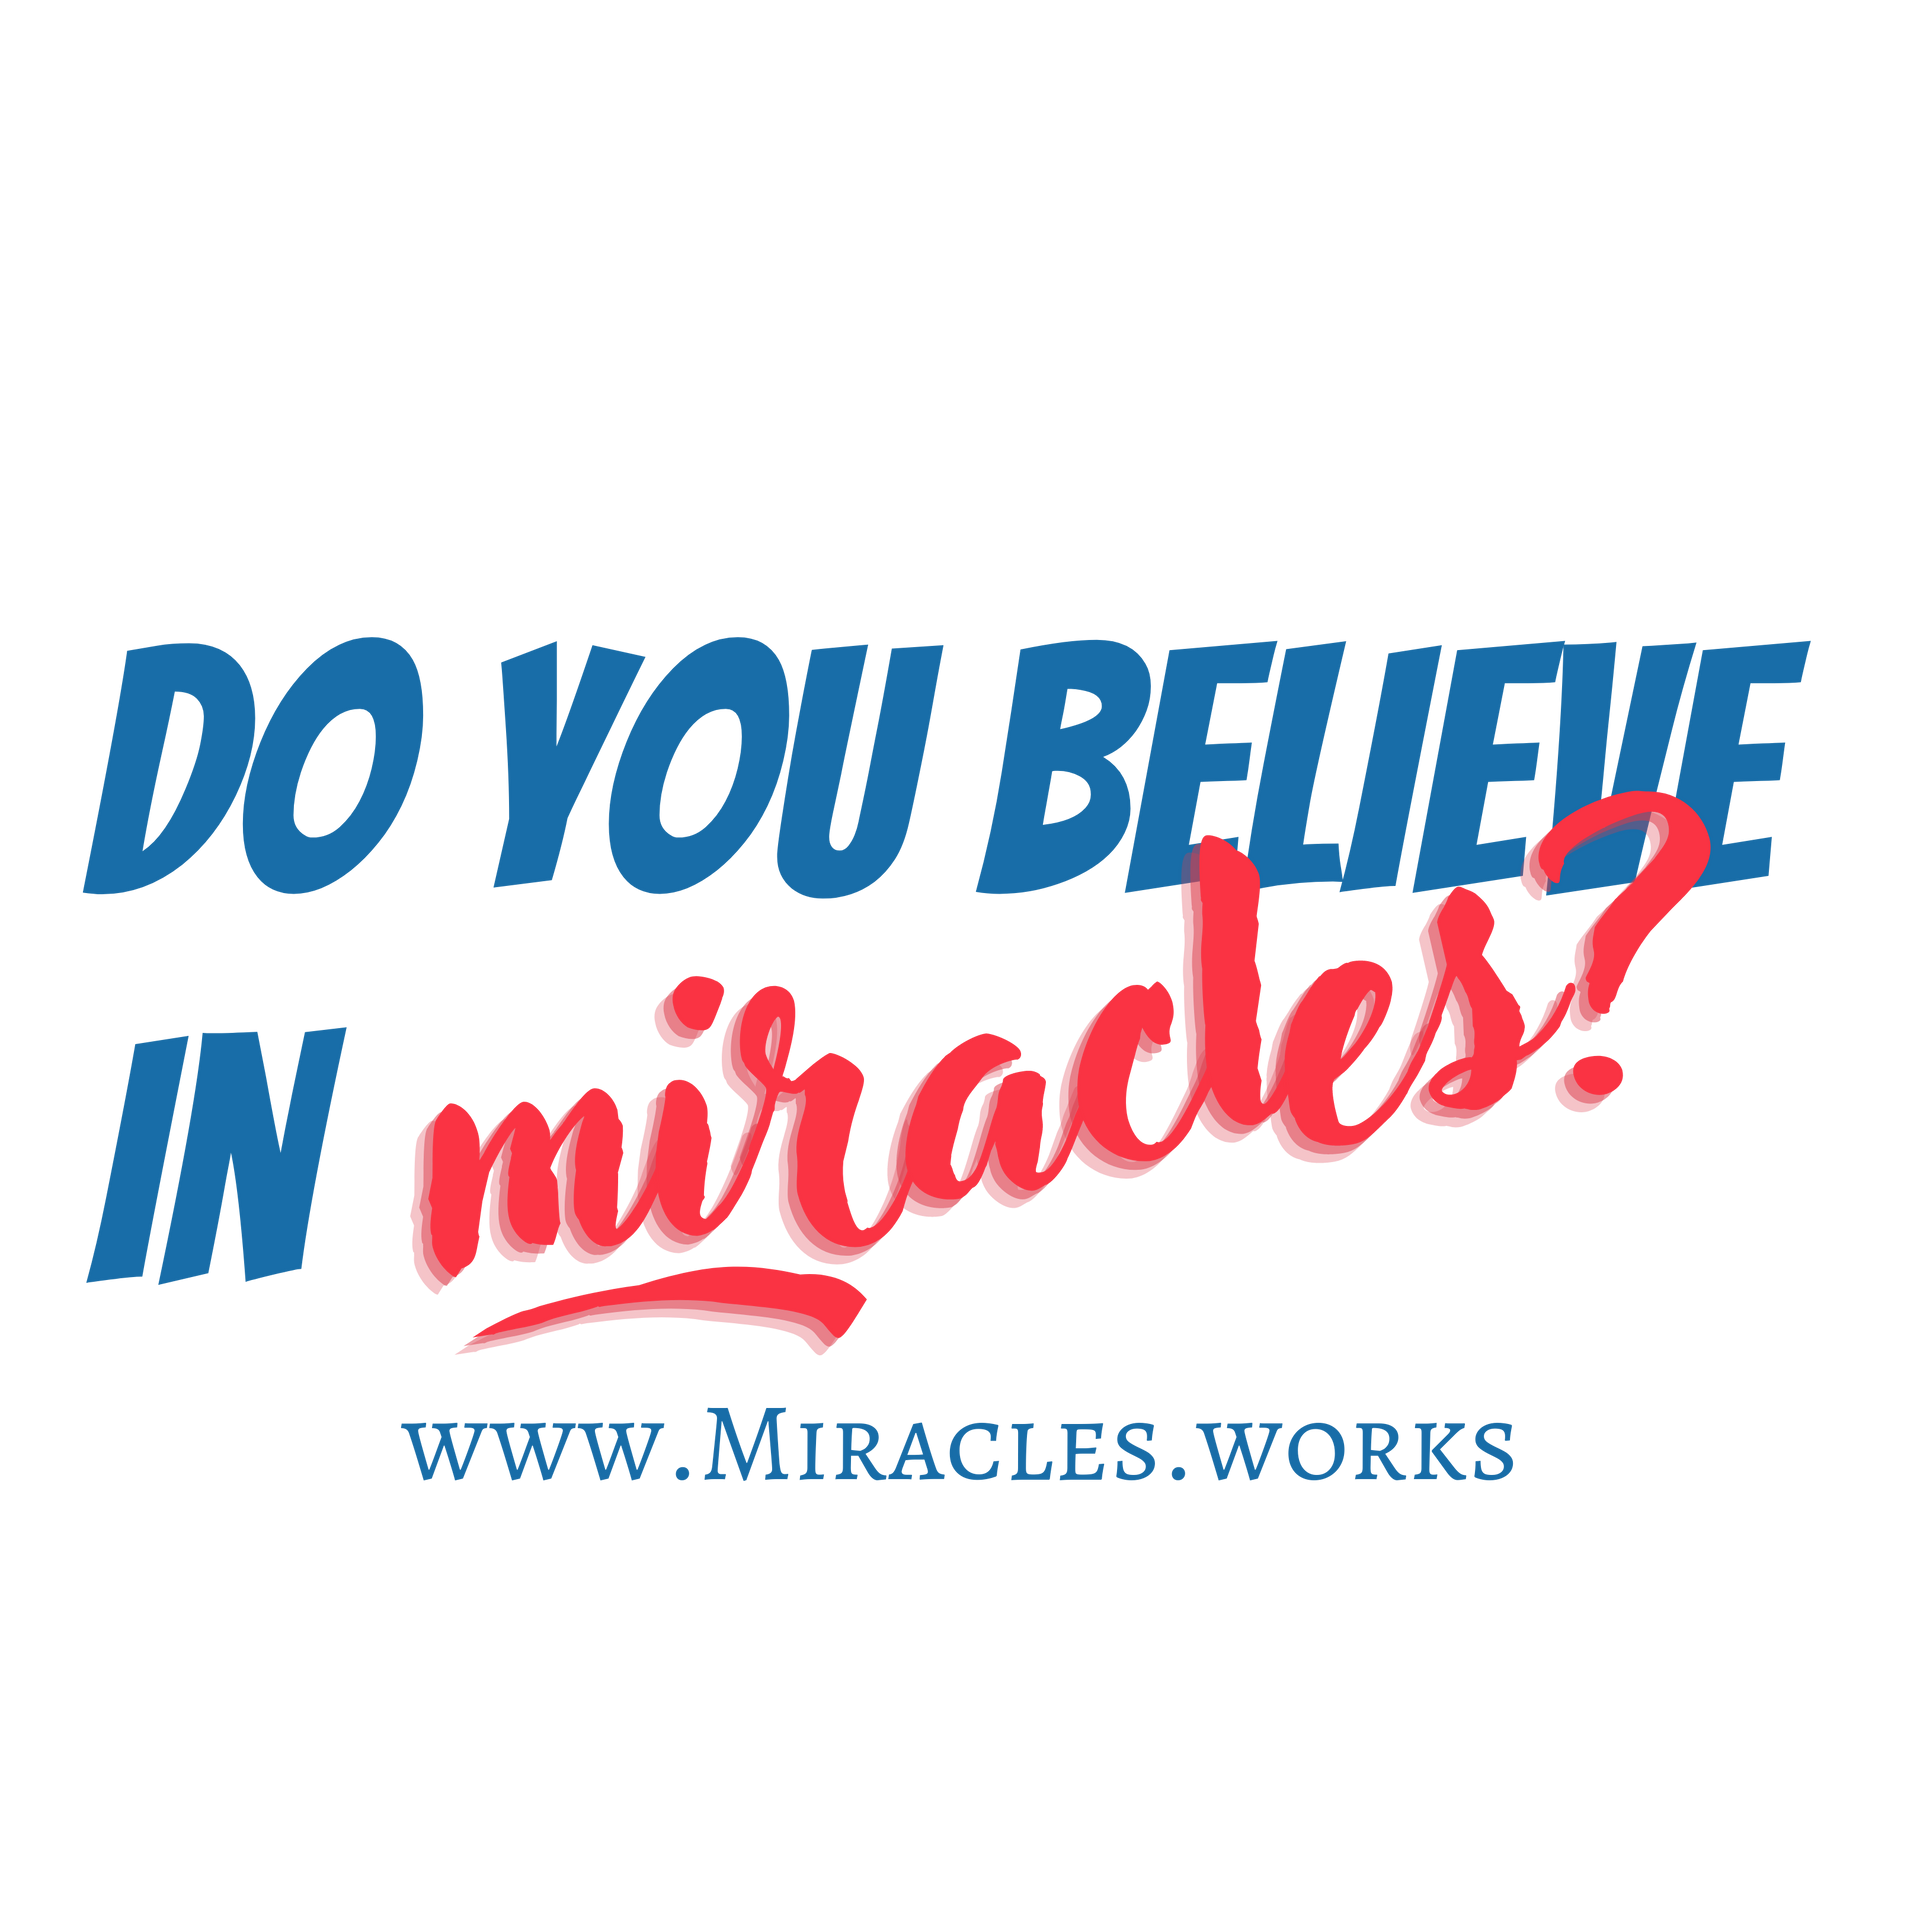 Gott tut auch heute noch Wunder #miraclesworks